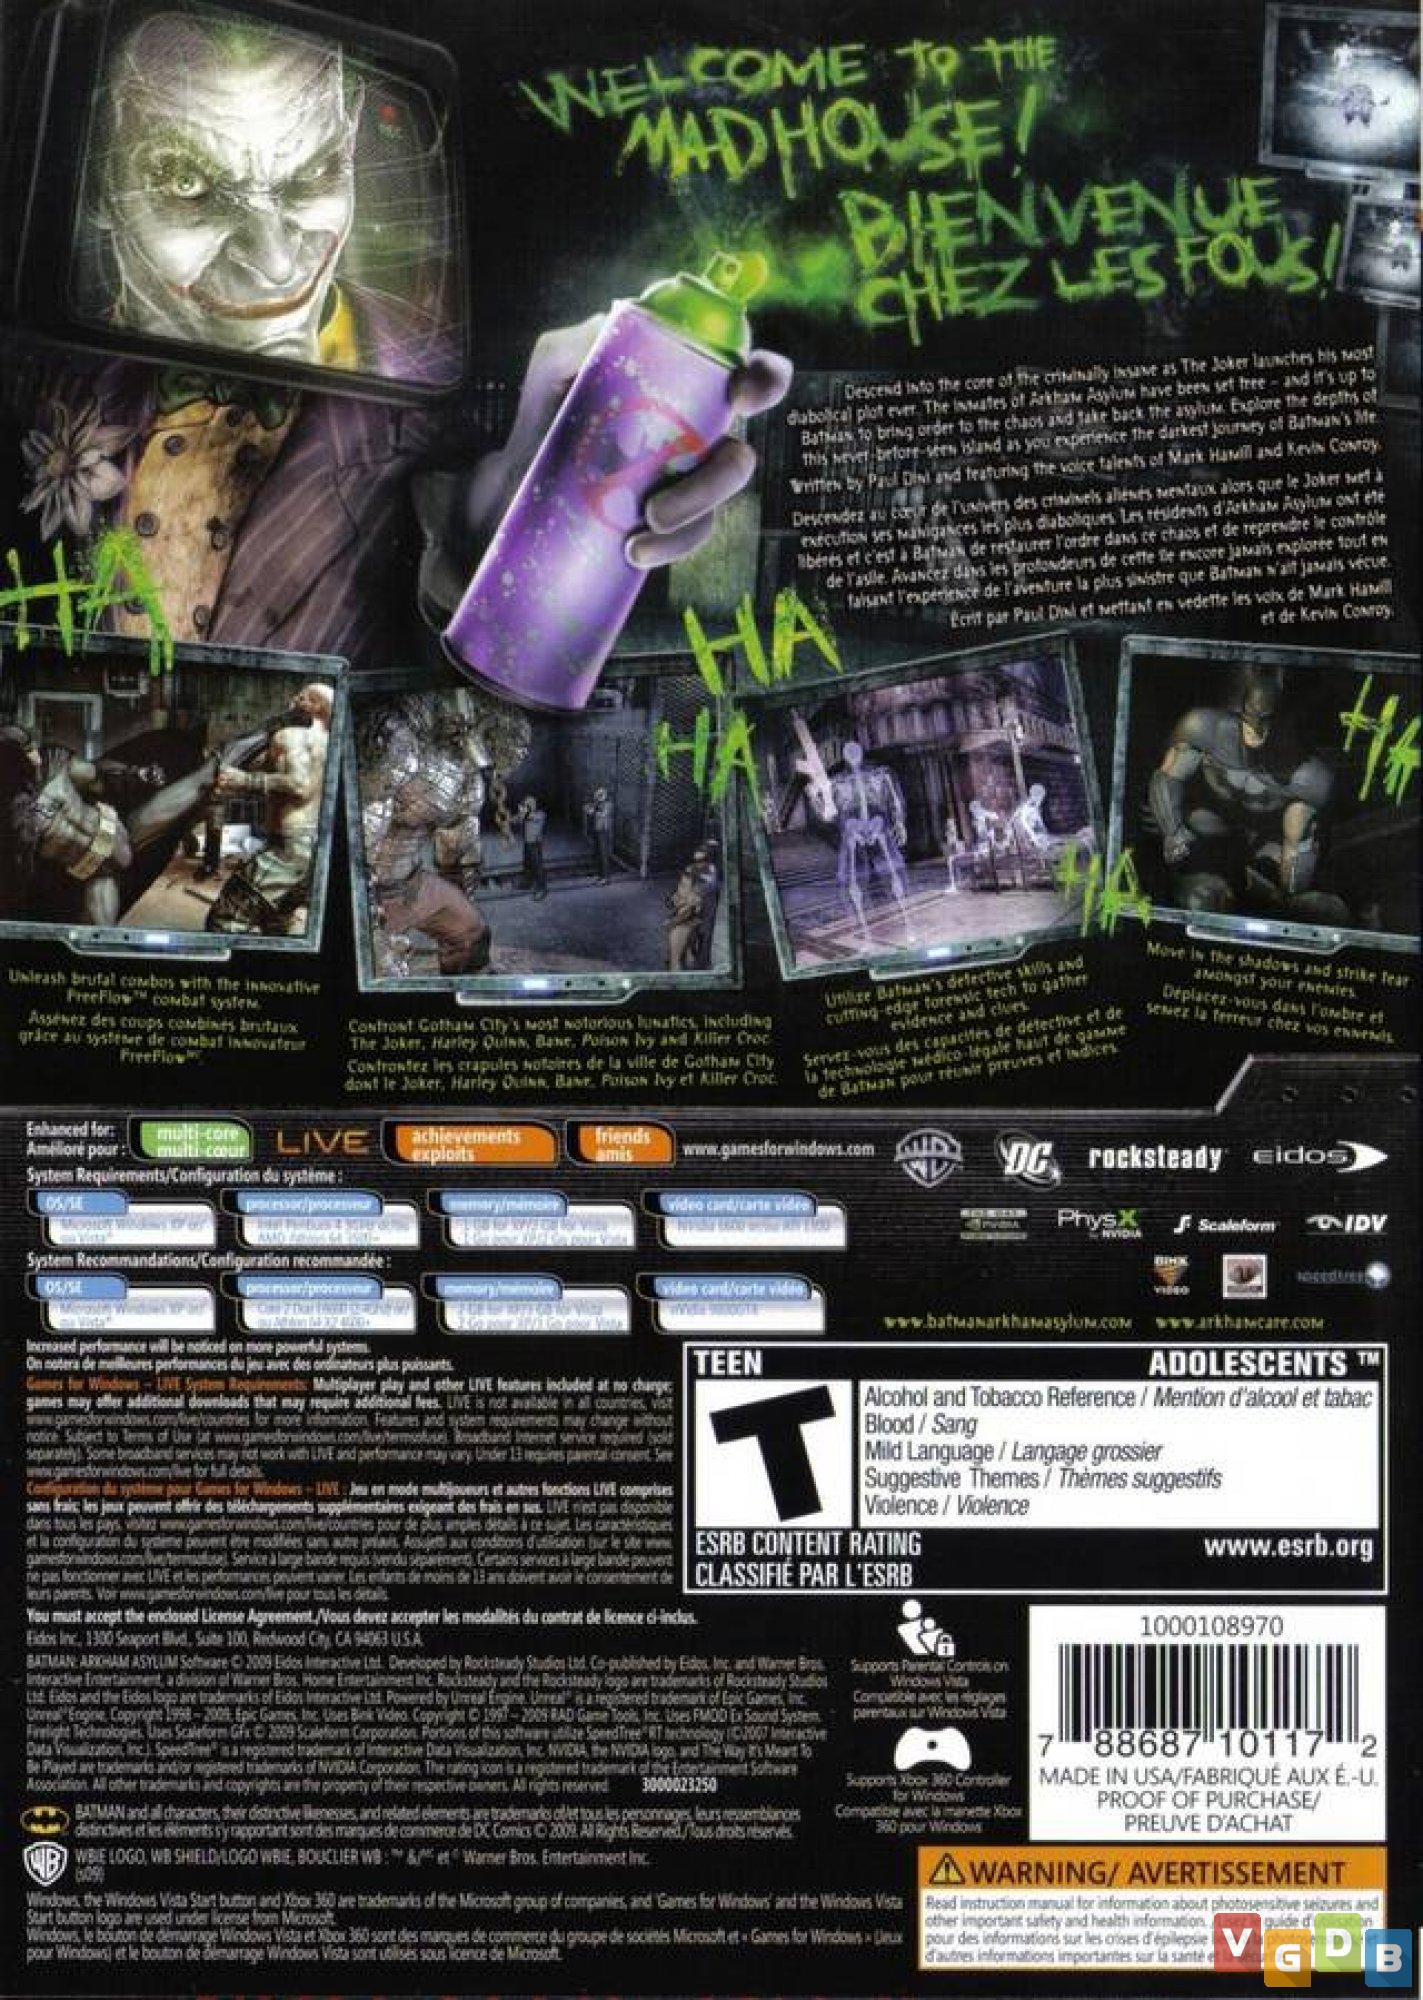 Batman Arkham Asylum - Edição do Jogo do Ano - Xbox 360 clássico